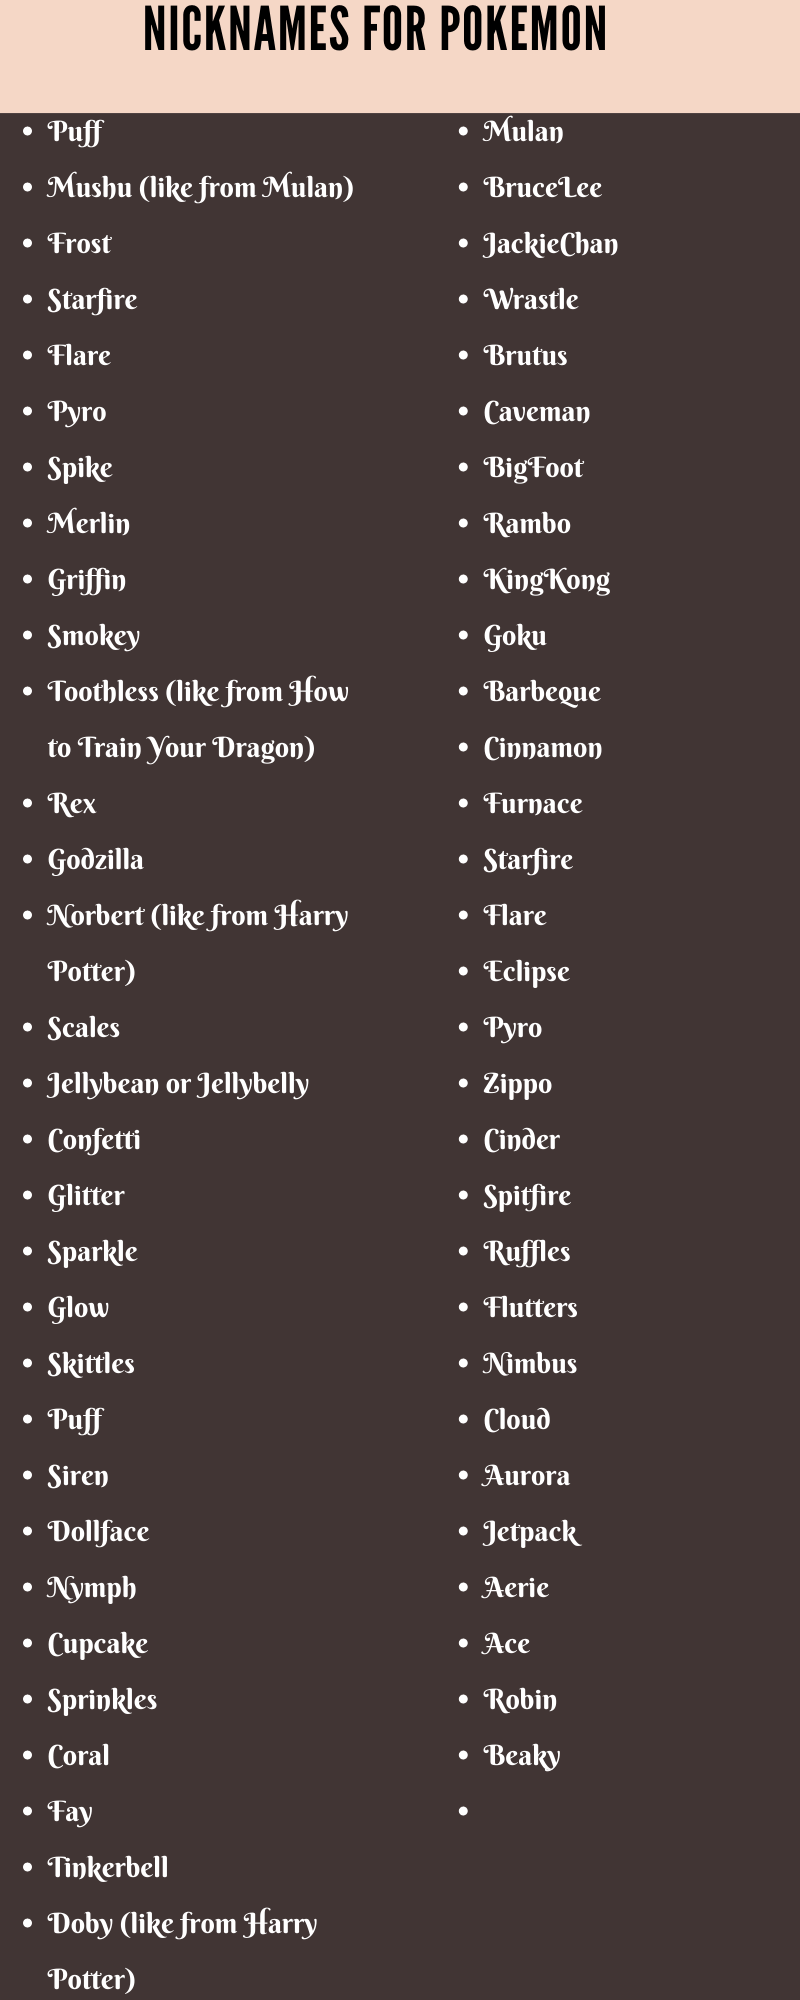  Nicknames for pokemons